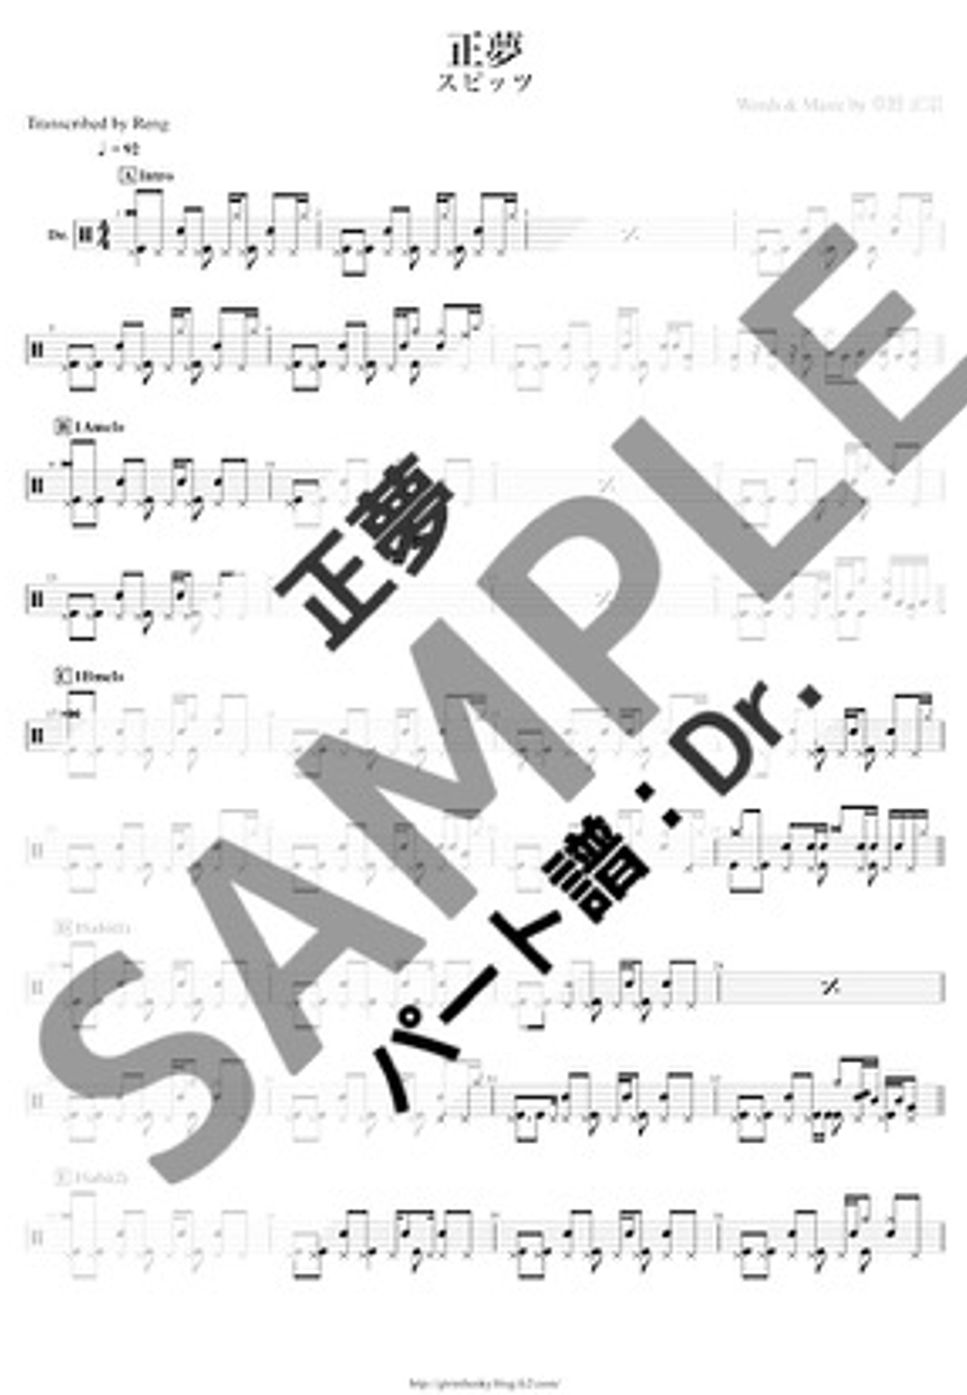 スピッツ - 正夢 (Dr./ドラム譜) by Score by Reng